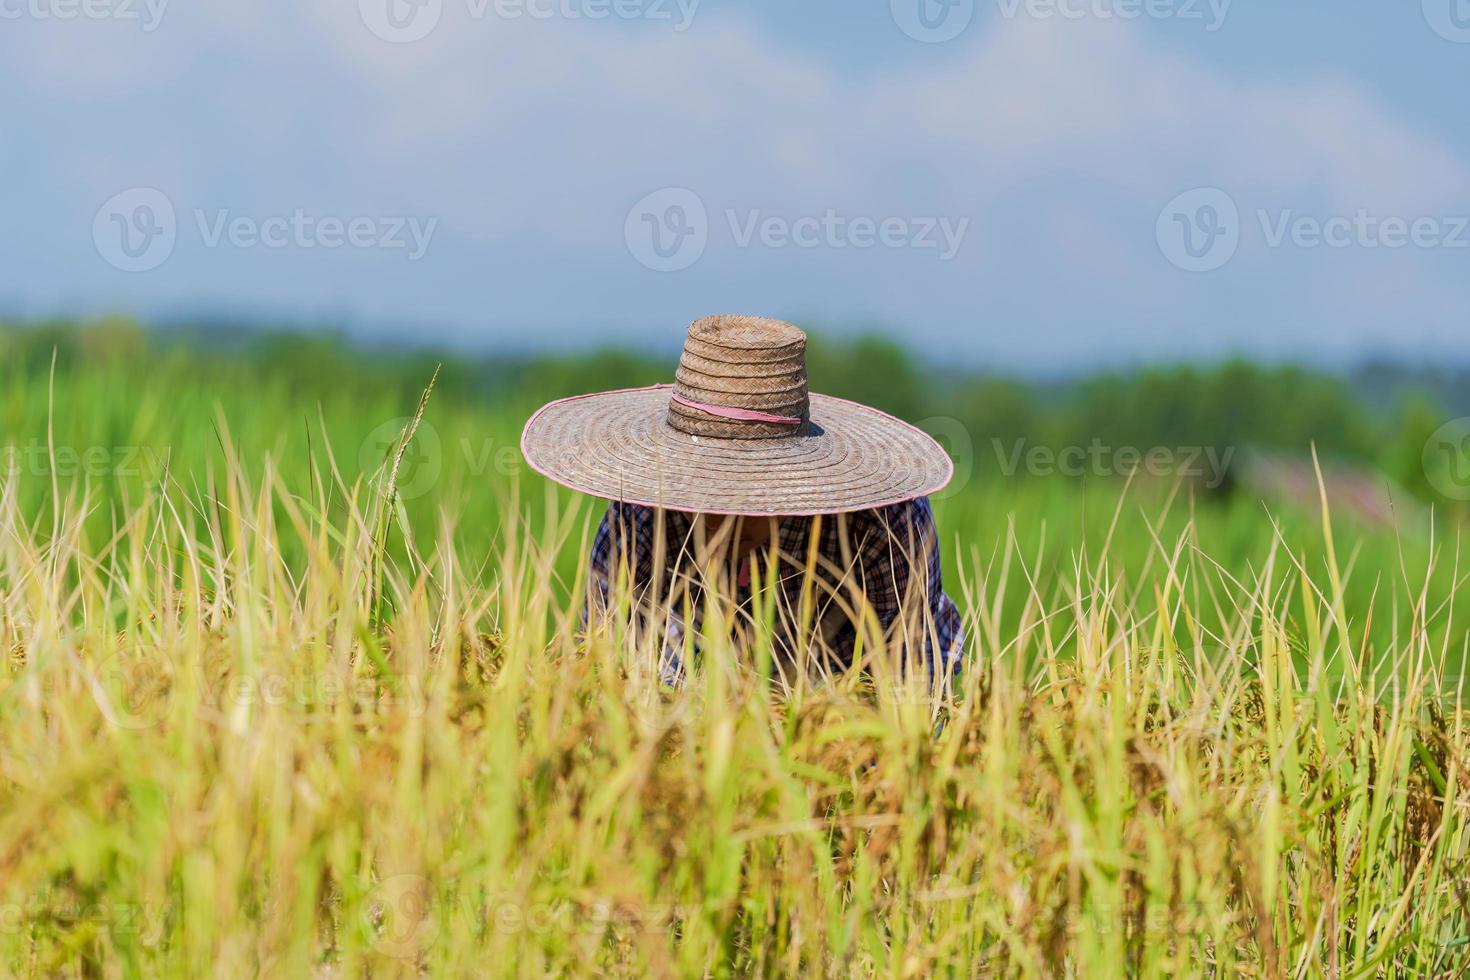 Granjero asiático que trabaja en el campo de arroz bajo un cielo azul foto